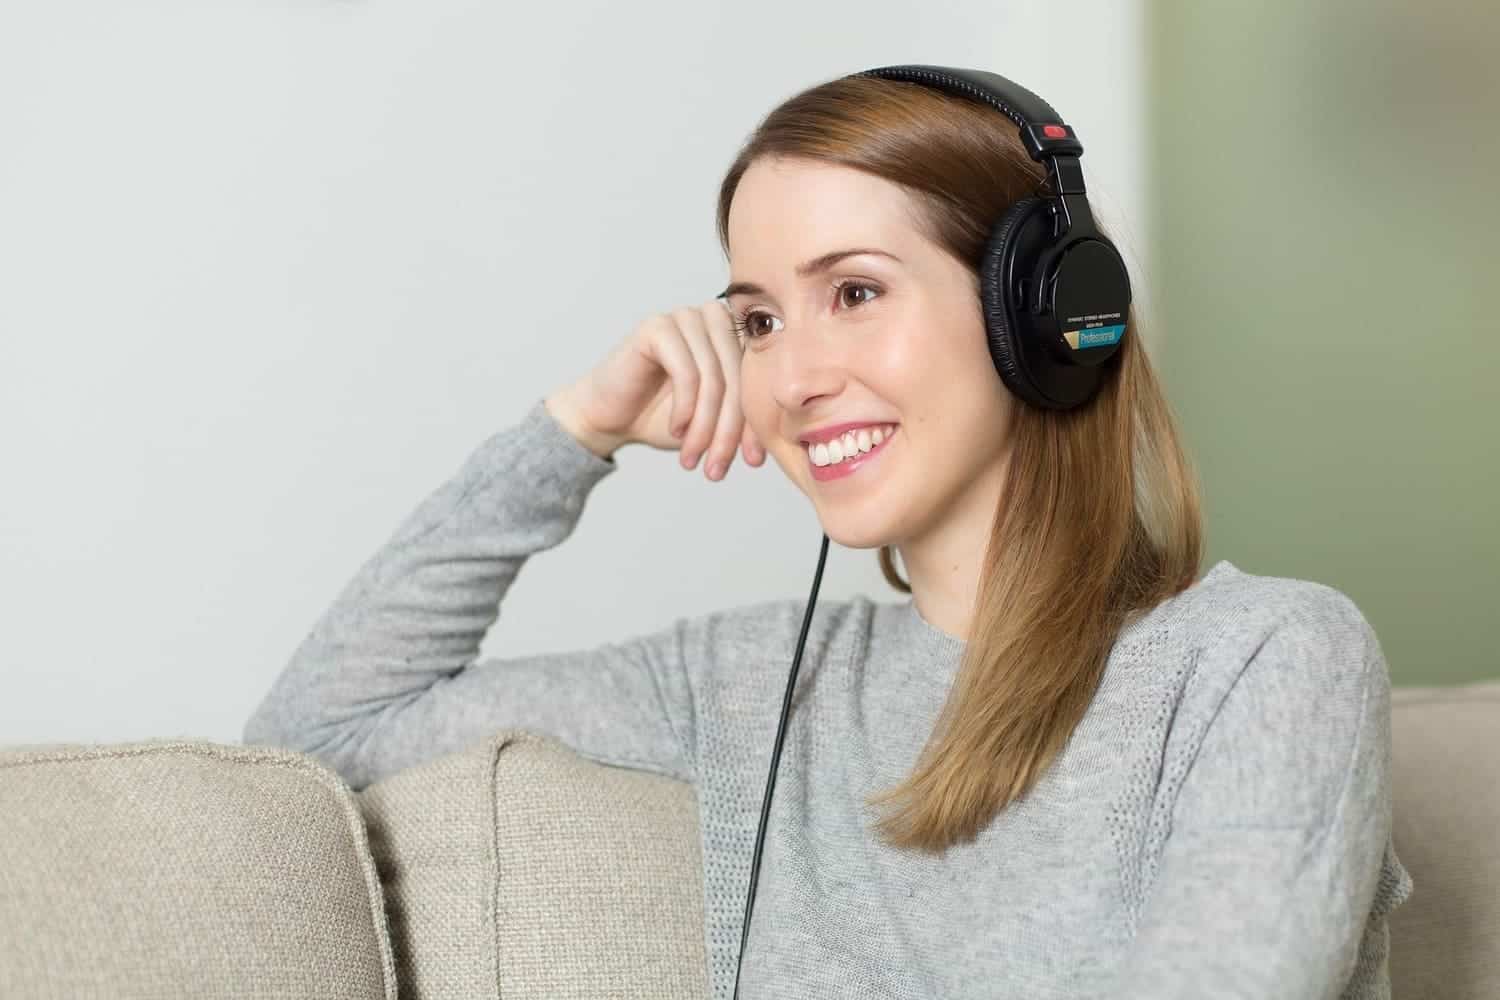 Escuchar música puede ayudar en el aprendizaje